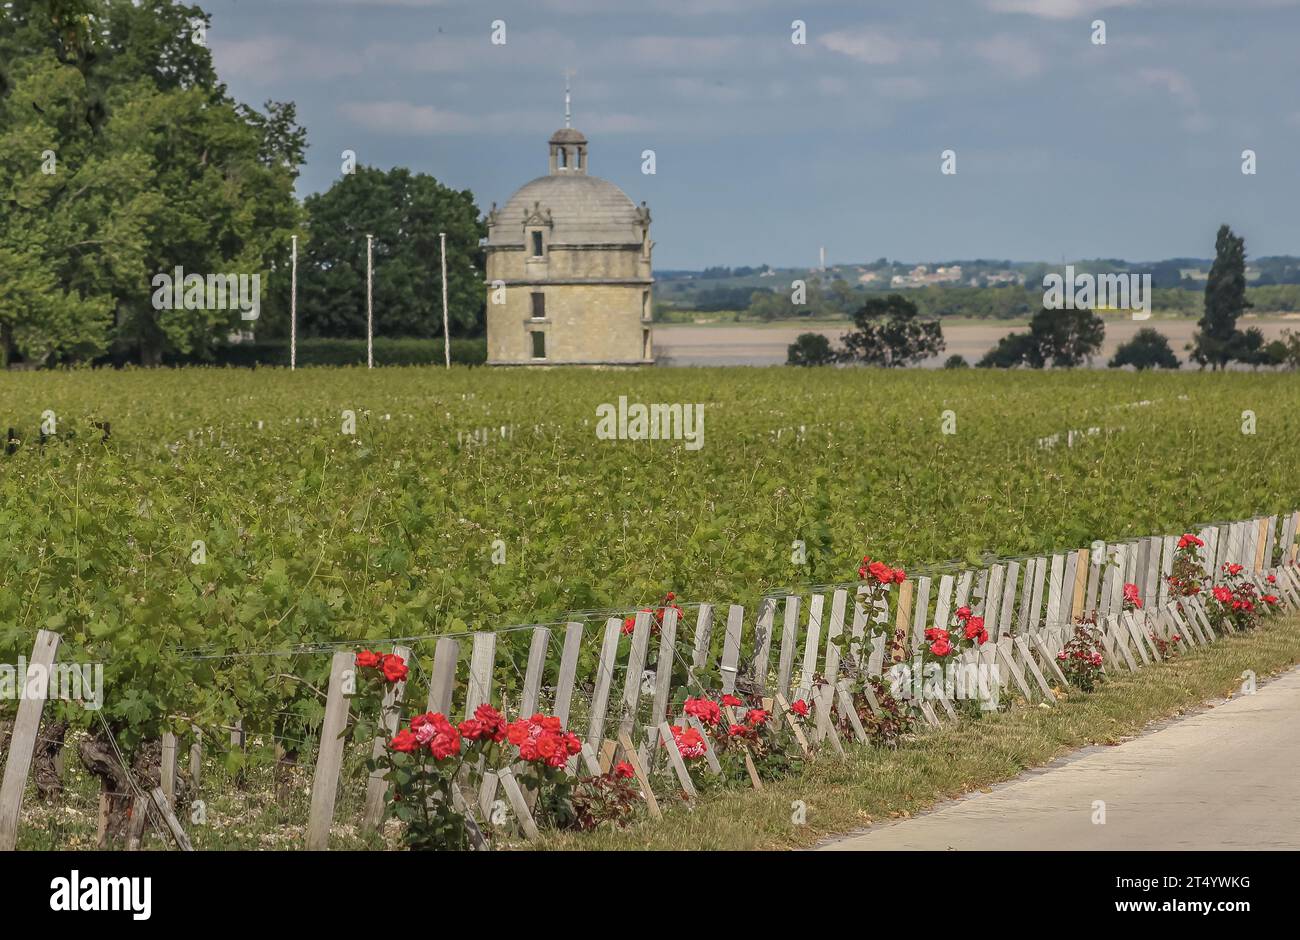 Des roses plantées à dessein à l'extrémité des rangées de vignes comme indication précoce de ravageurs Banque D'Images